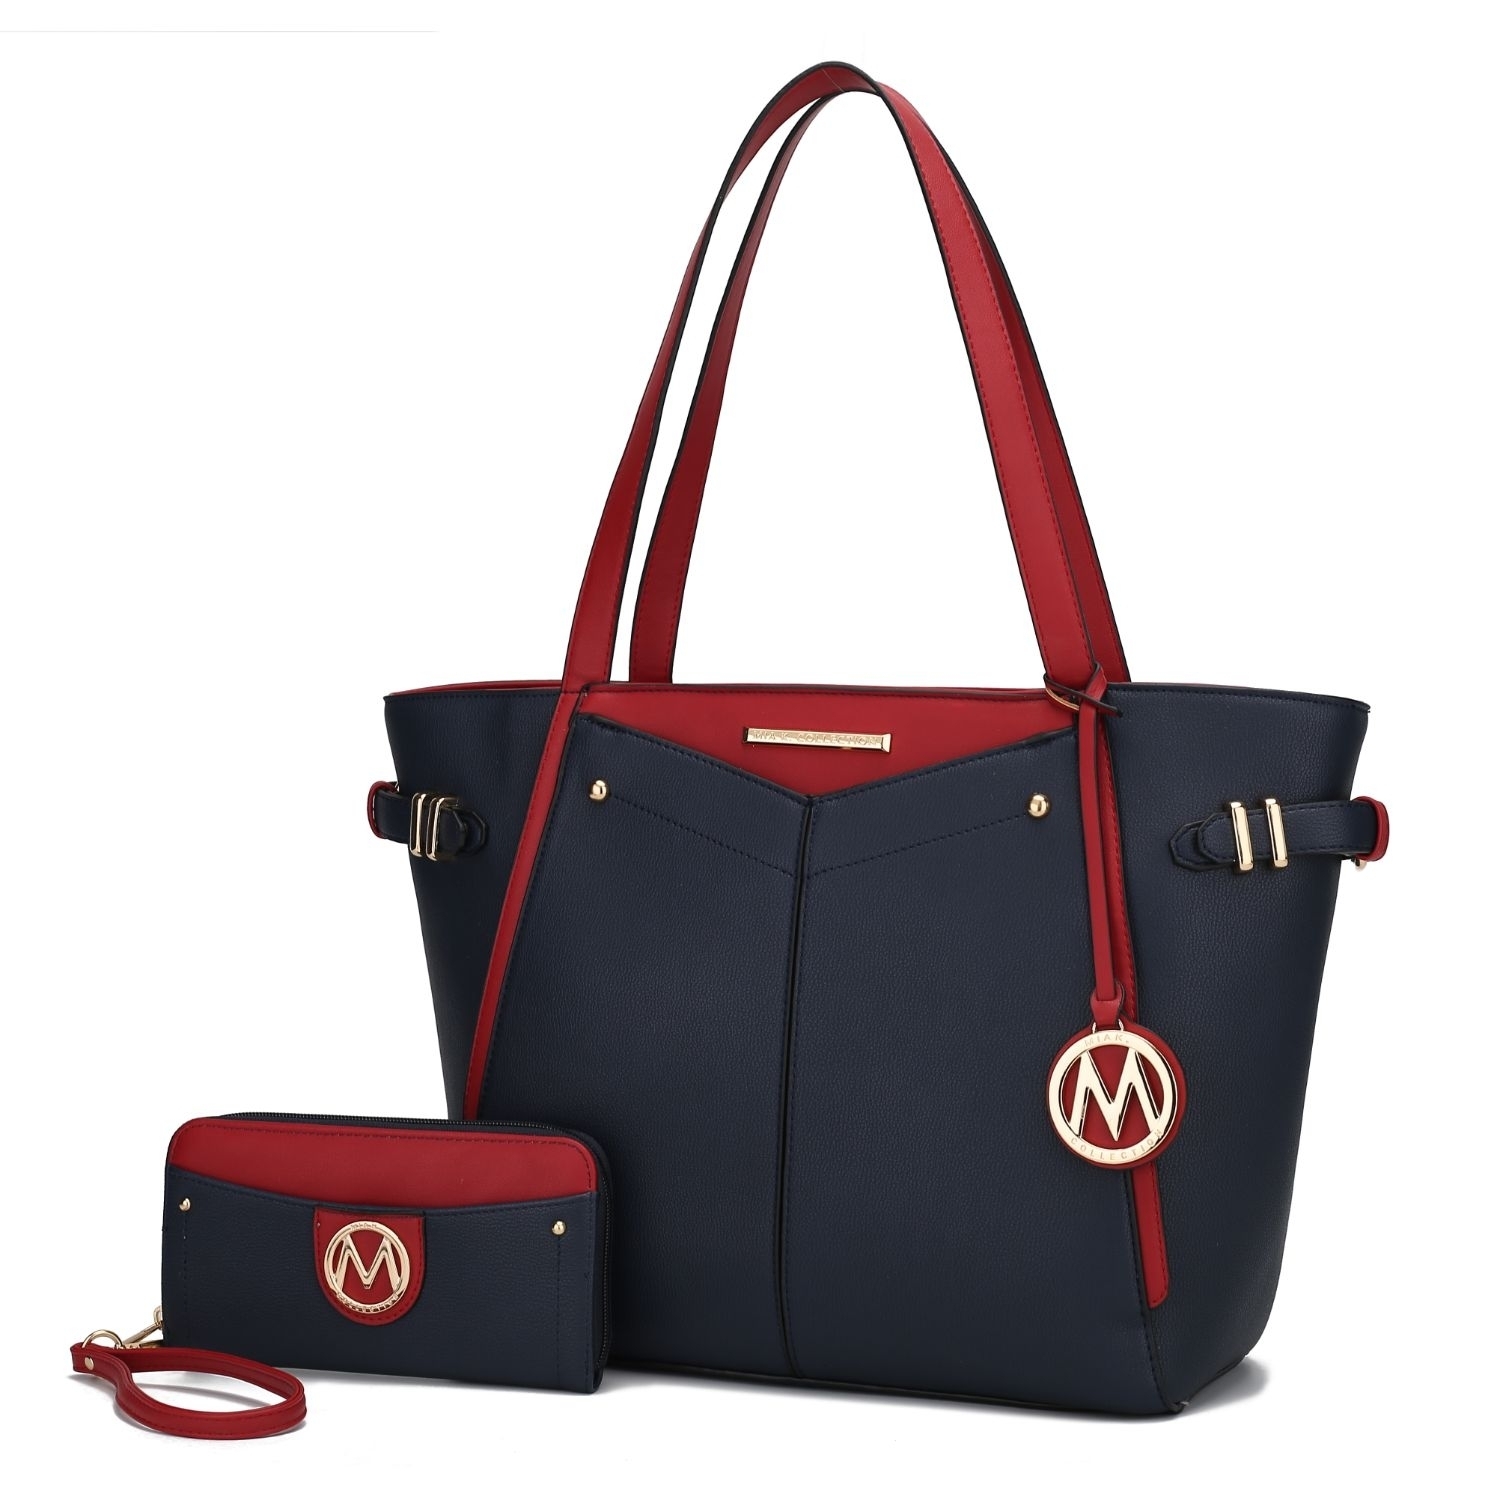 MKF Collection Morgan Tote Handbag By Mia K. - Navy Red